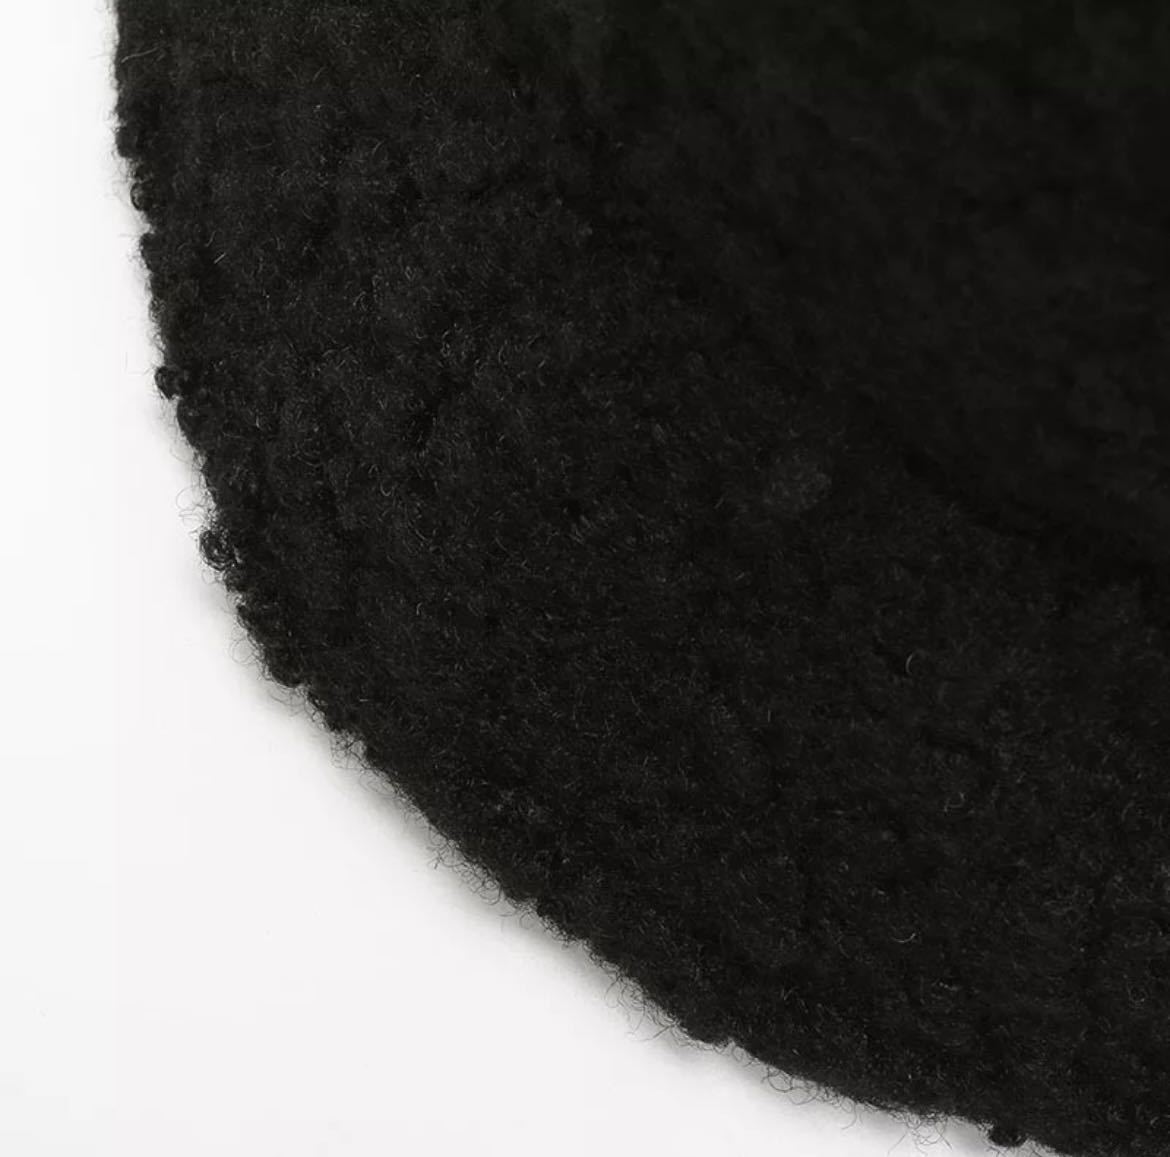 バケットハット 帽子 ハット キャップ ファッション アクセサリー 小物 ユニセックス 暖かい グレイ 灰色 2569_画像4